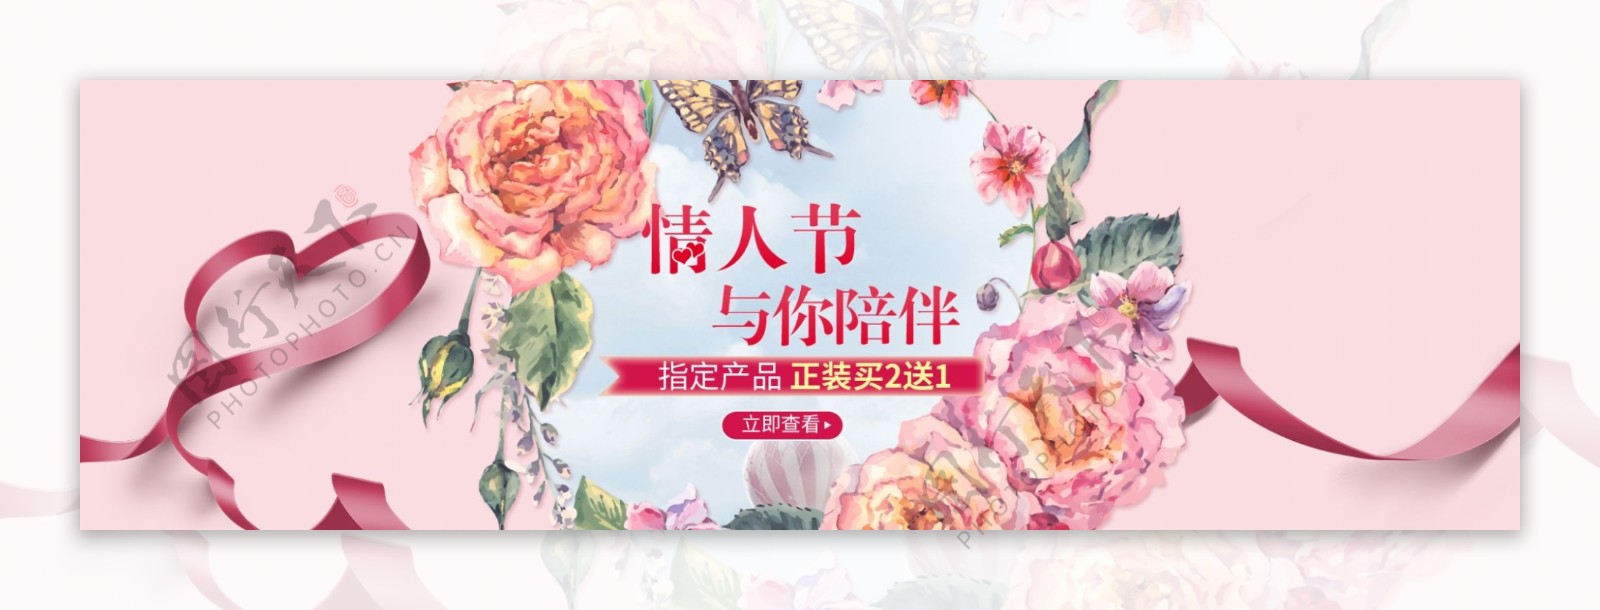 电商淘宝天猫七夕情人节玫瑰服装促销banner